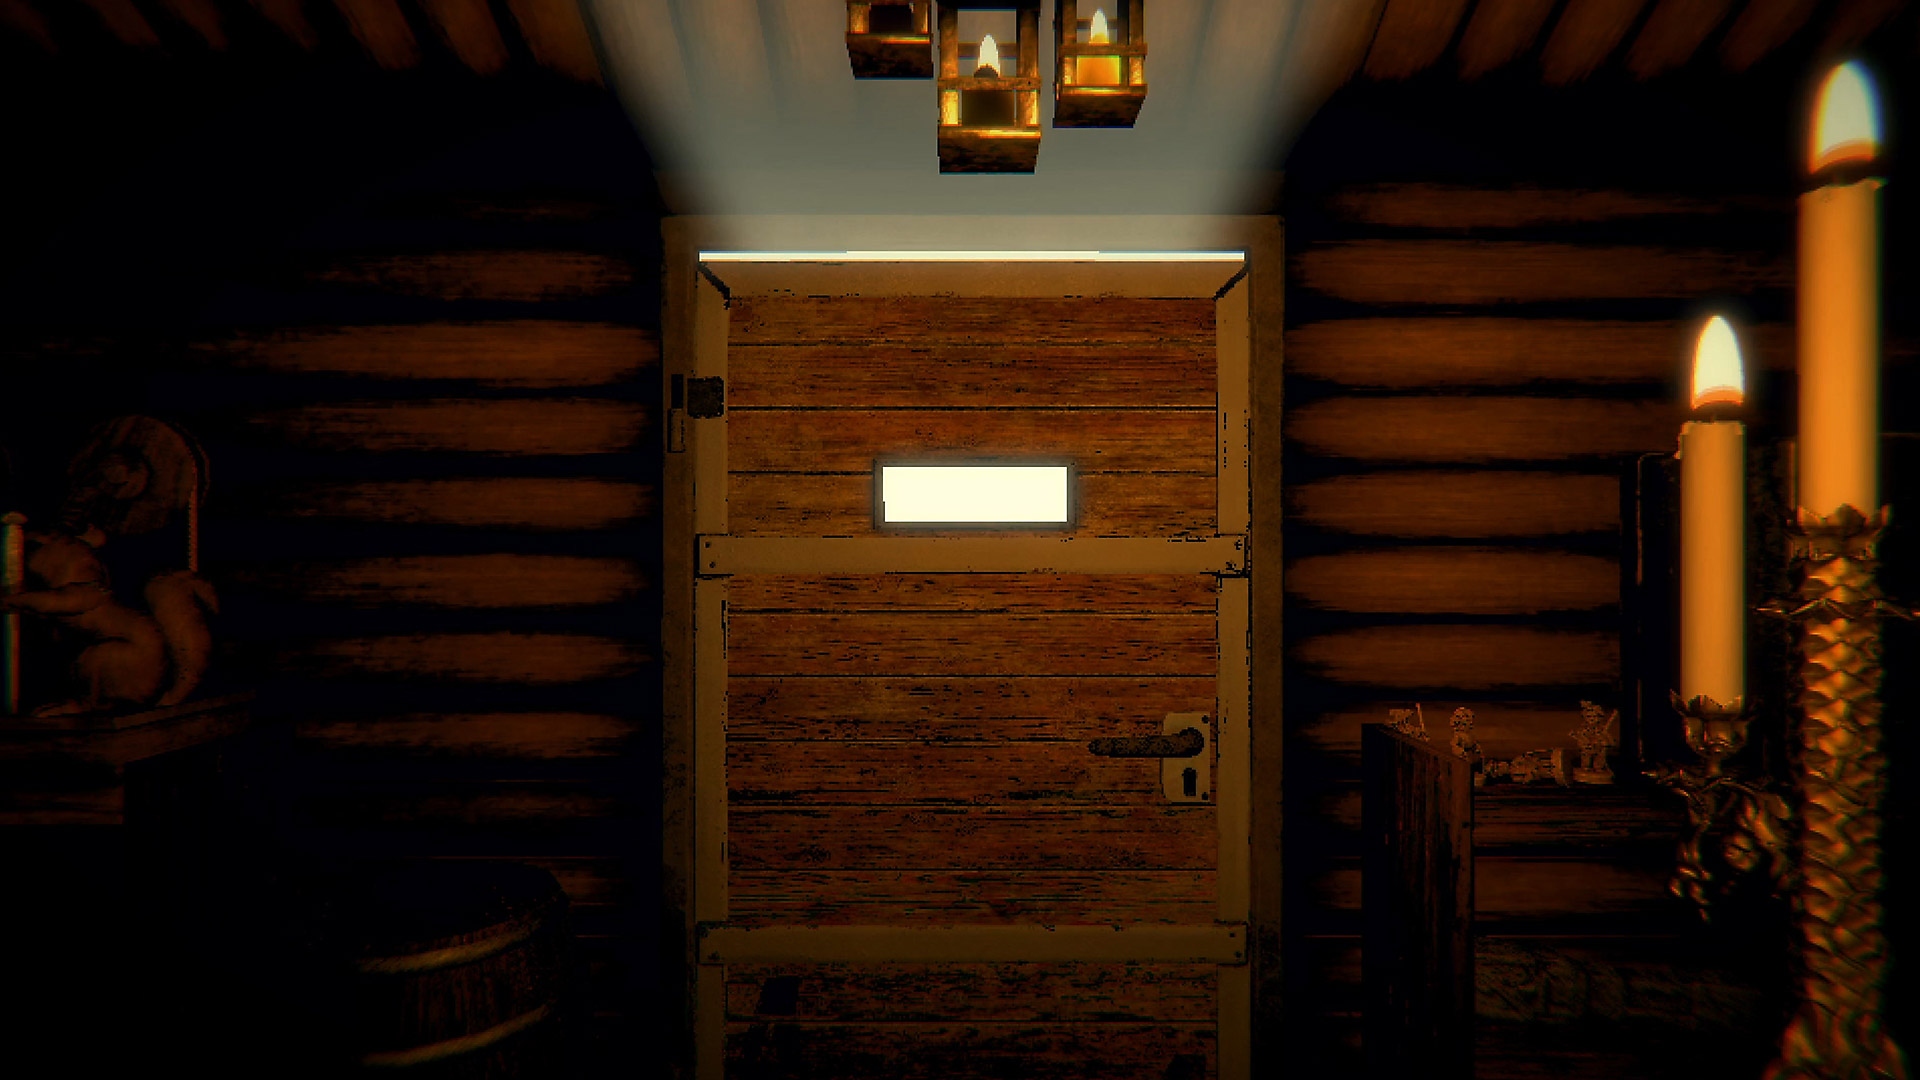 Captura de pantalla del juego Inscryption con una puerta de madera cerrada en un pasillo iluminado por velas.